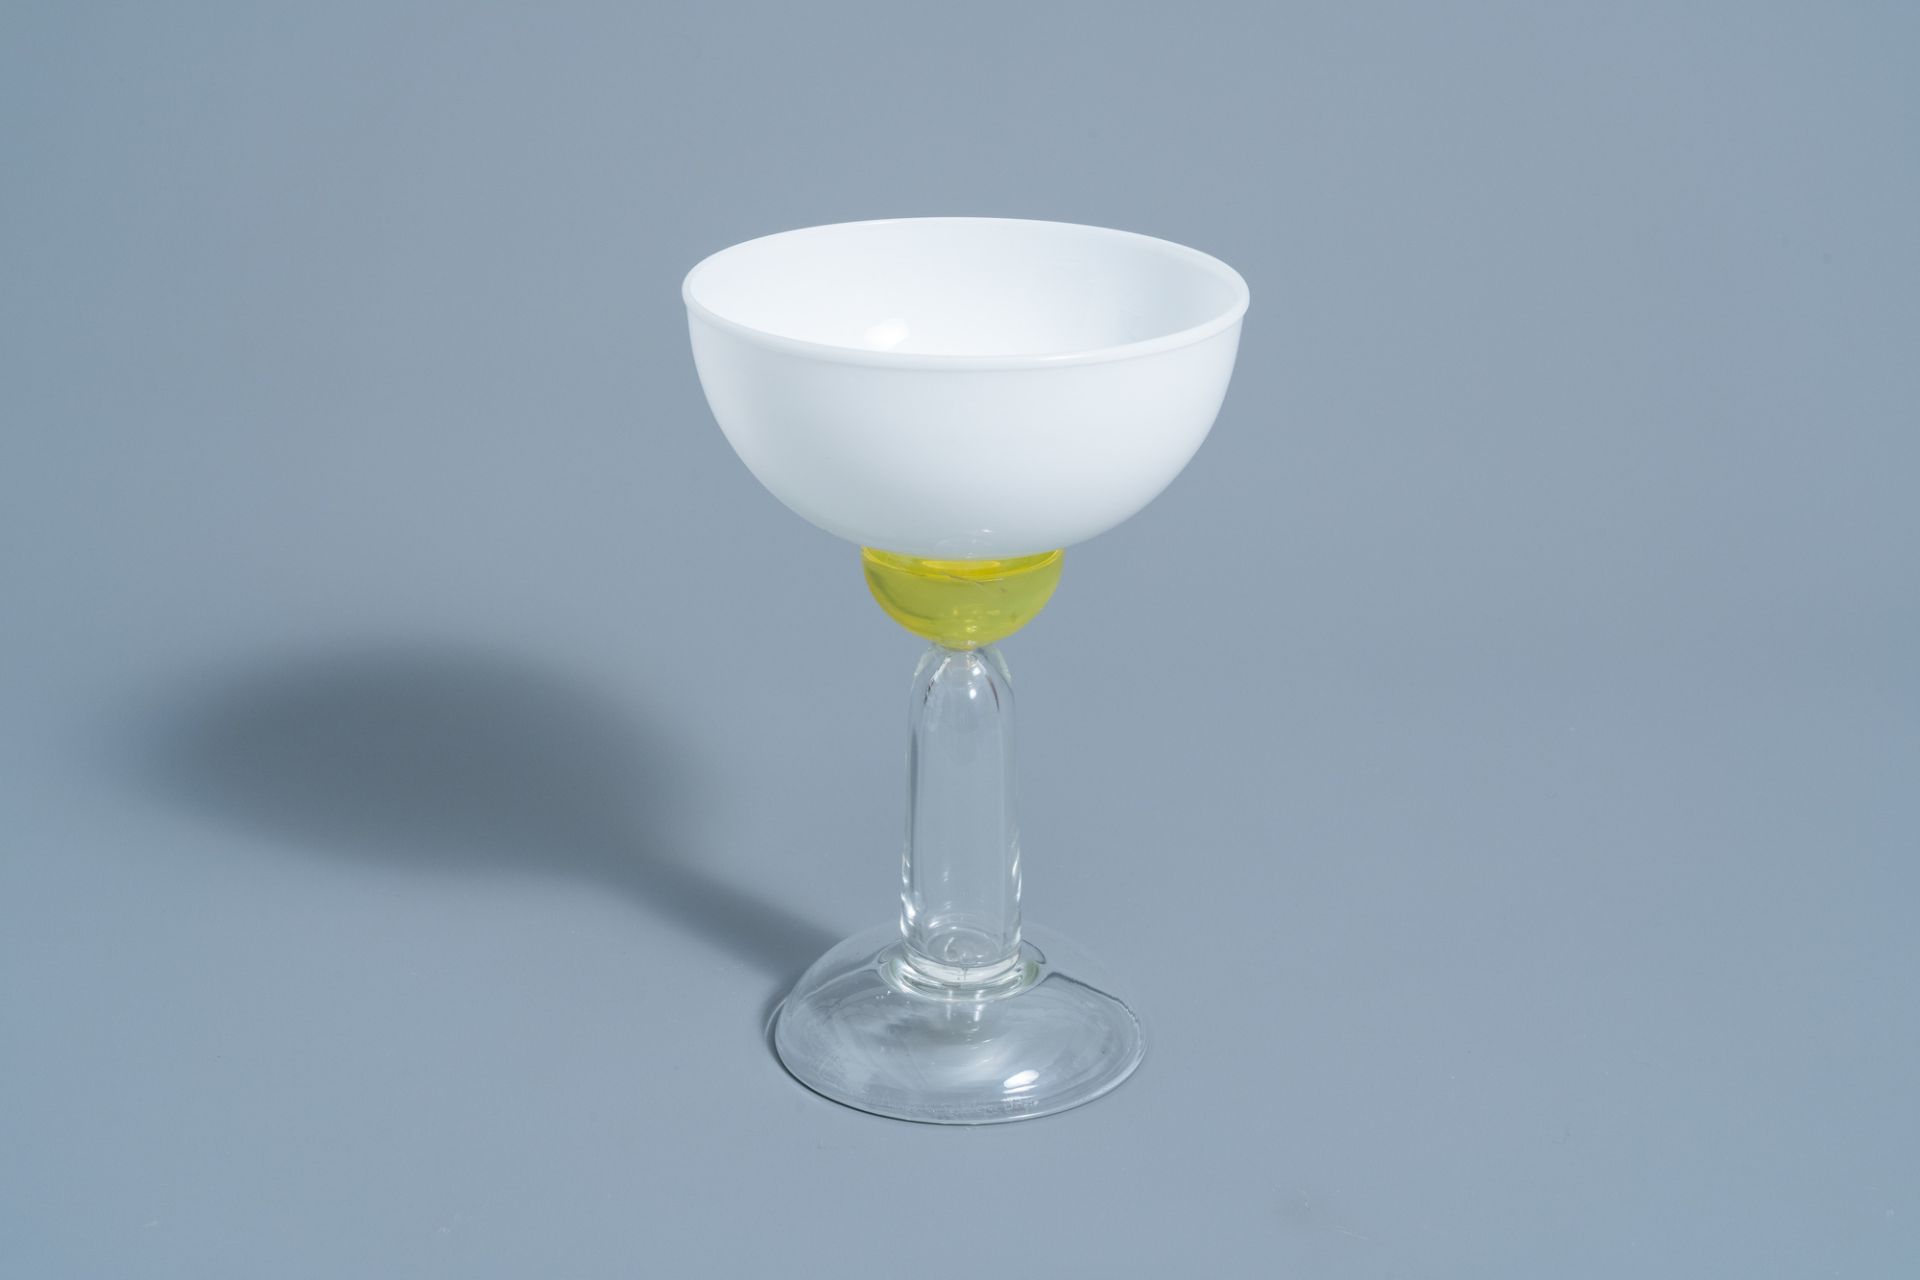 Marco Zanini (1954): 'Beltegeuse' Murano glass glass for Memphis Milano by Toso Vetri d'Arte, [1983]